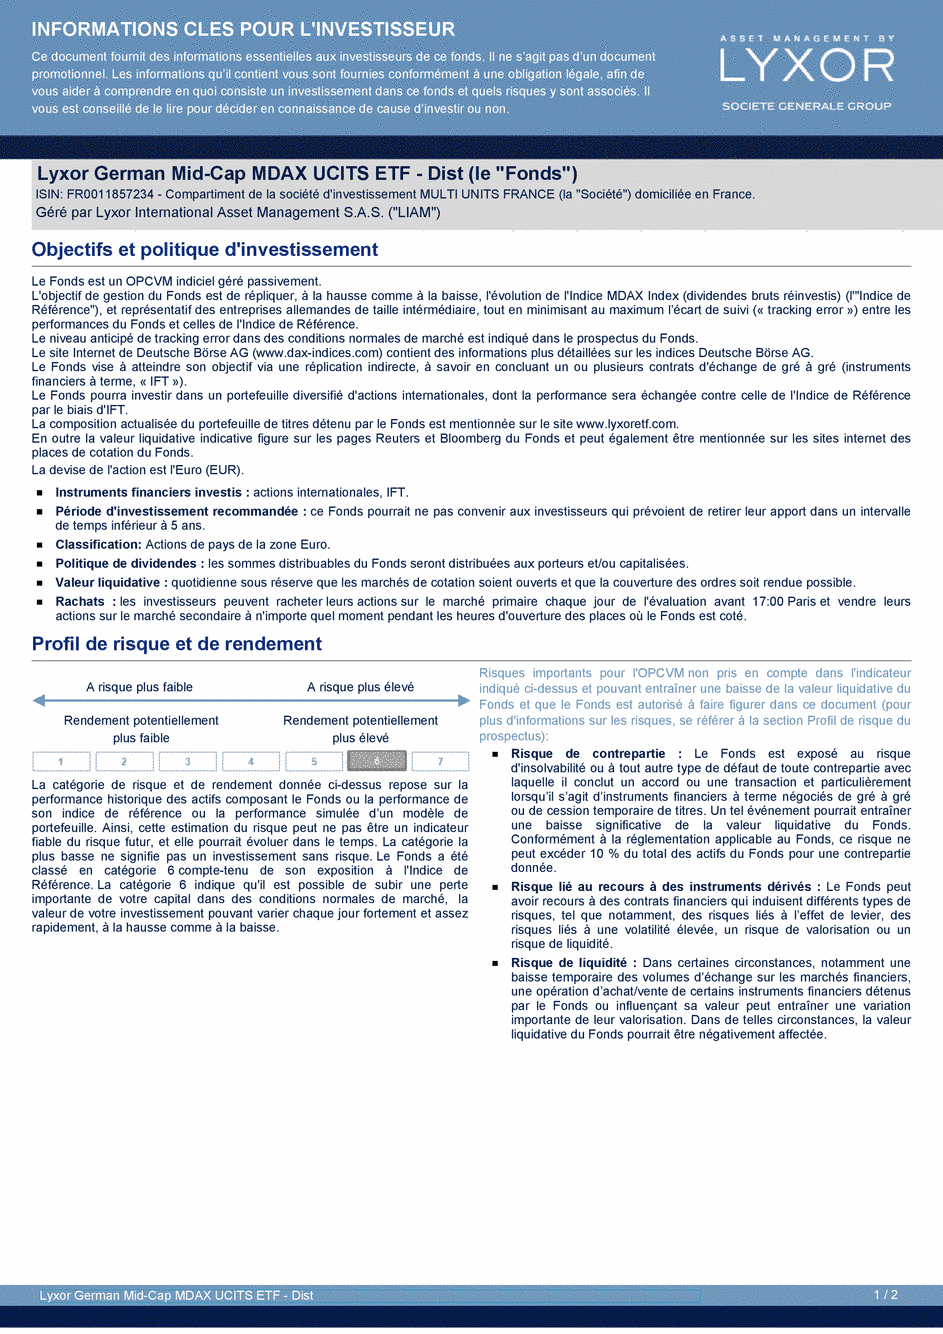 DICI Lyxor German Mid-Cap MDAX UCITS ETF - Dist - 19/02/2021 - Français